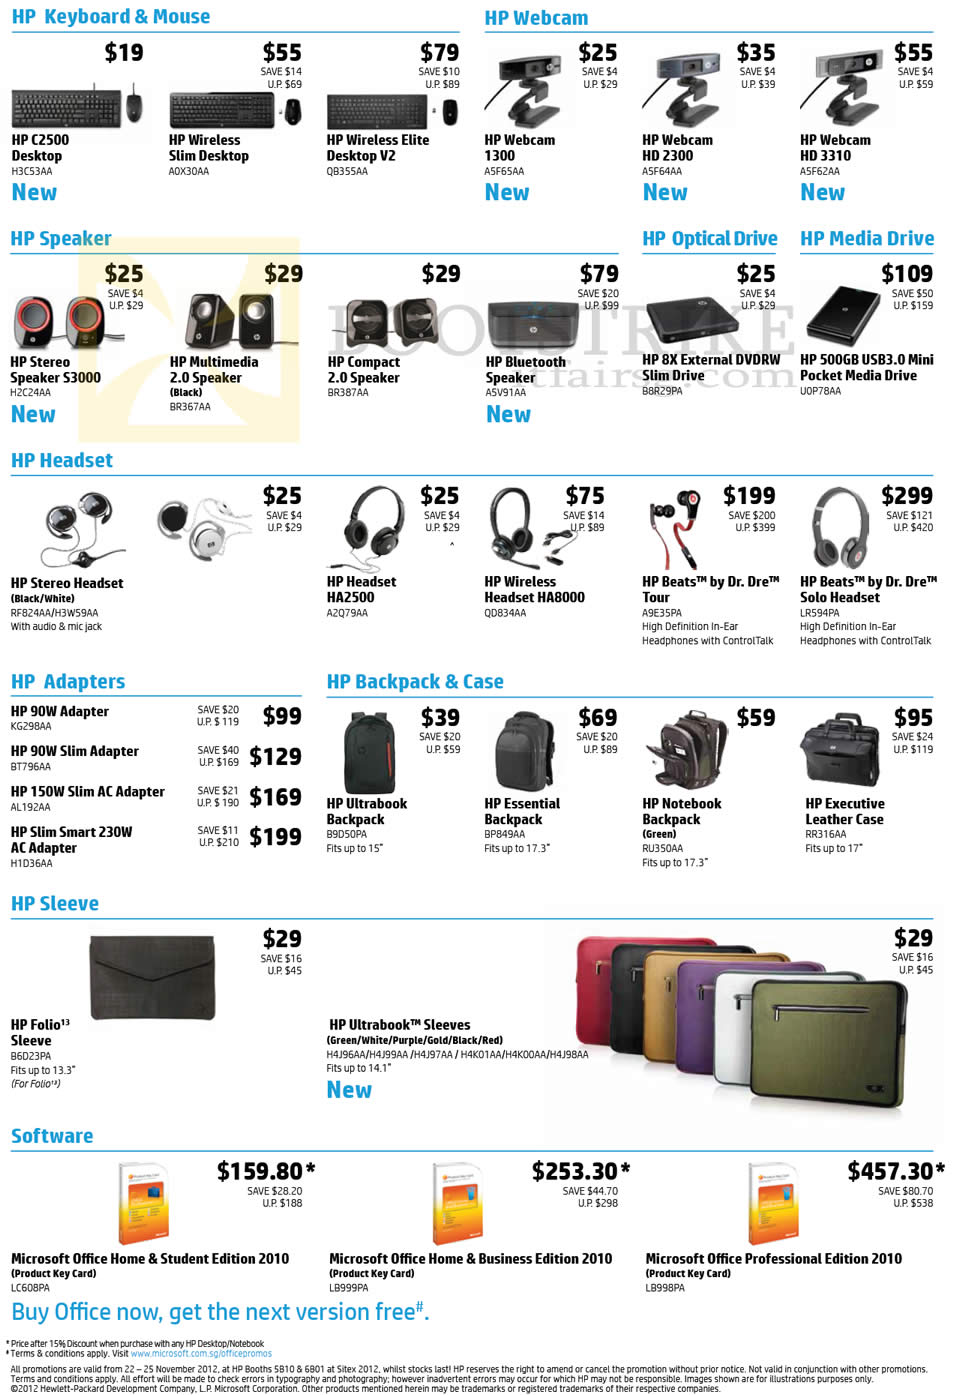 SITEX 2012 price list image brochure of HP Accessories Keyboard C2500 Wireless Slim Elite V2, Webcam 1300 HD2300 HD3310, Speakers, Headset, Power Adapters, Backpacks Bags, Sleeve, Microsoft Office 2010